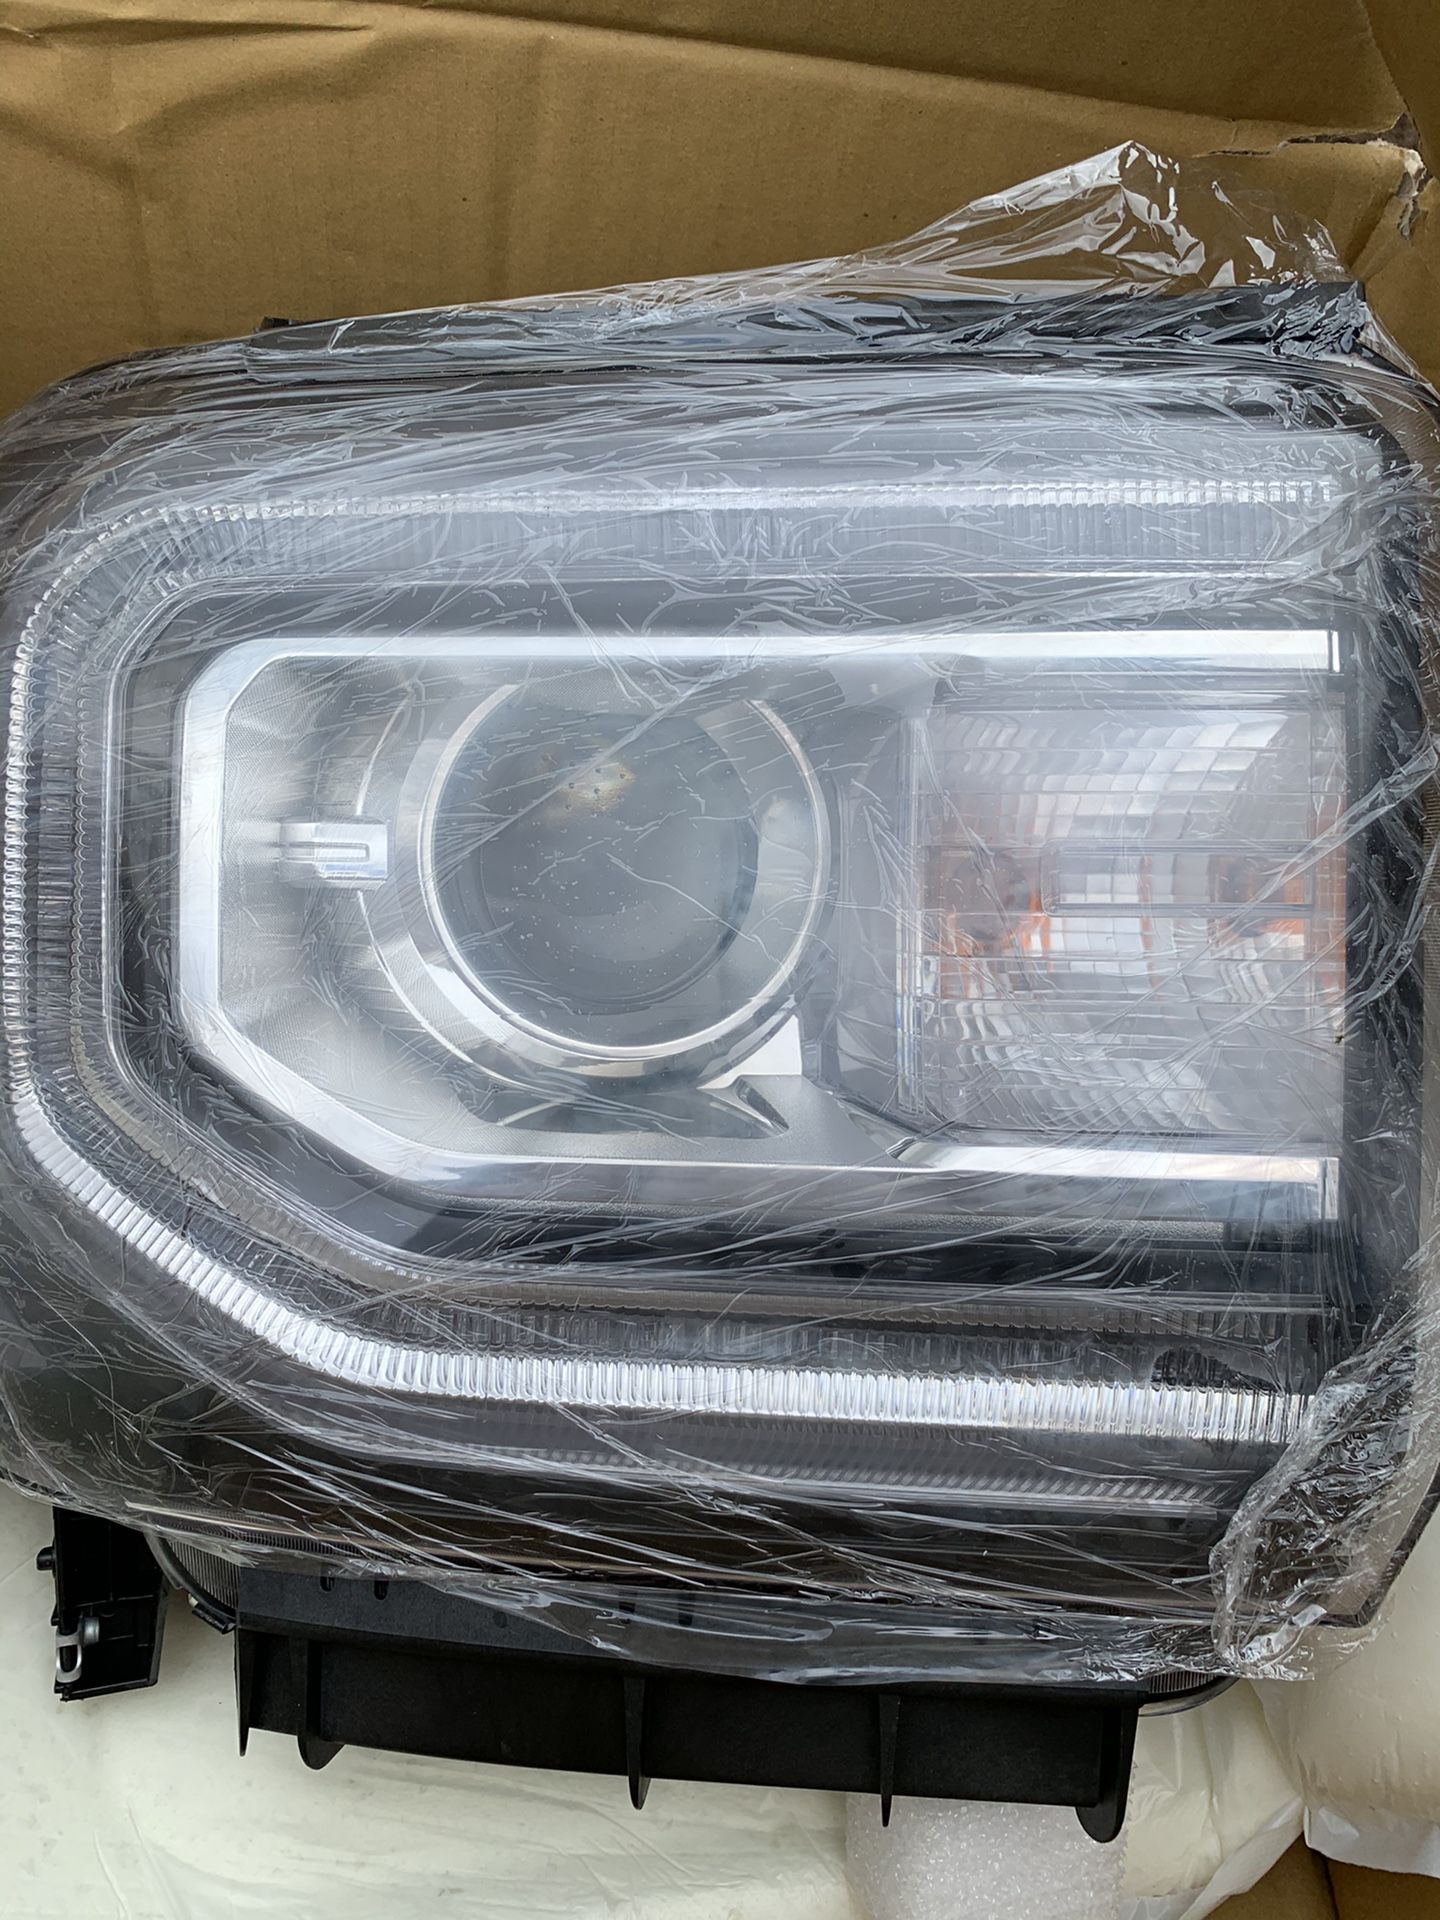 GMC Sierra 1500 headlight replacement